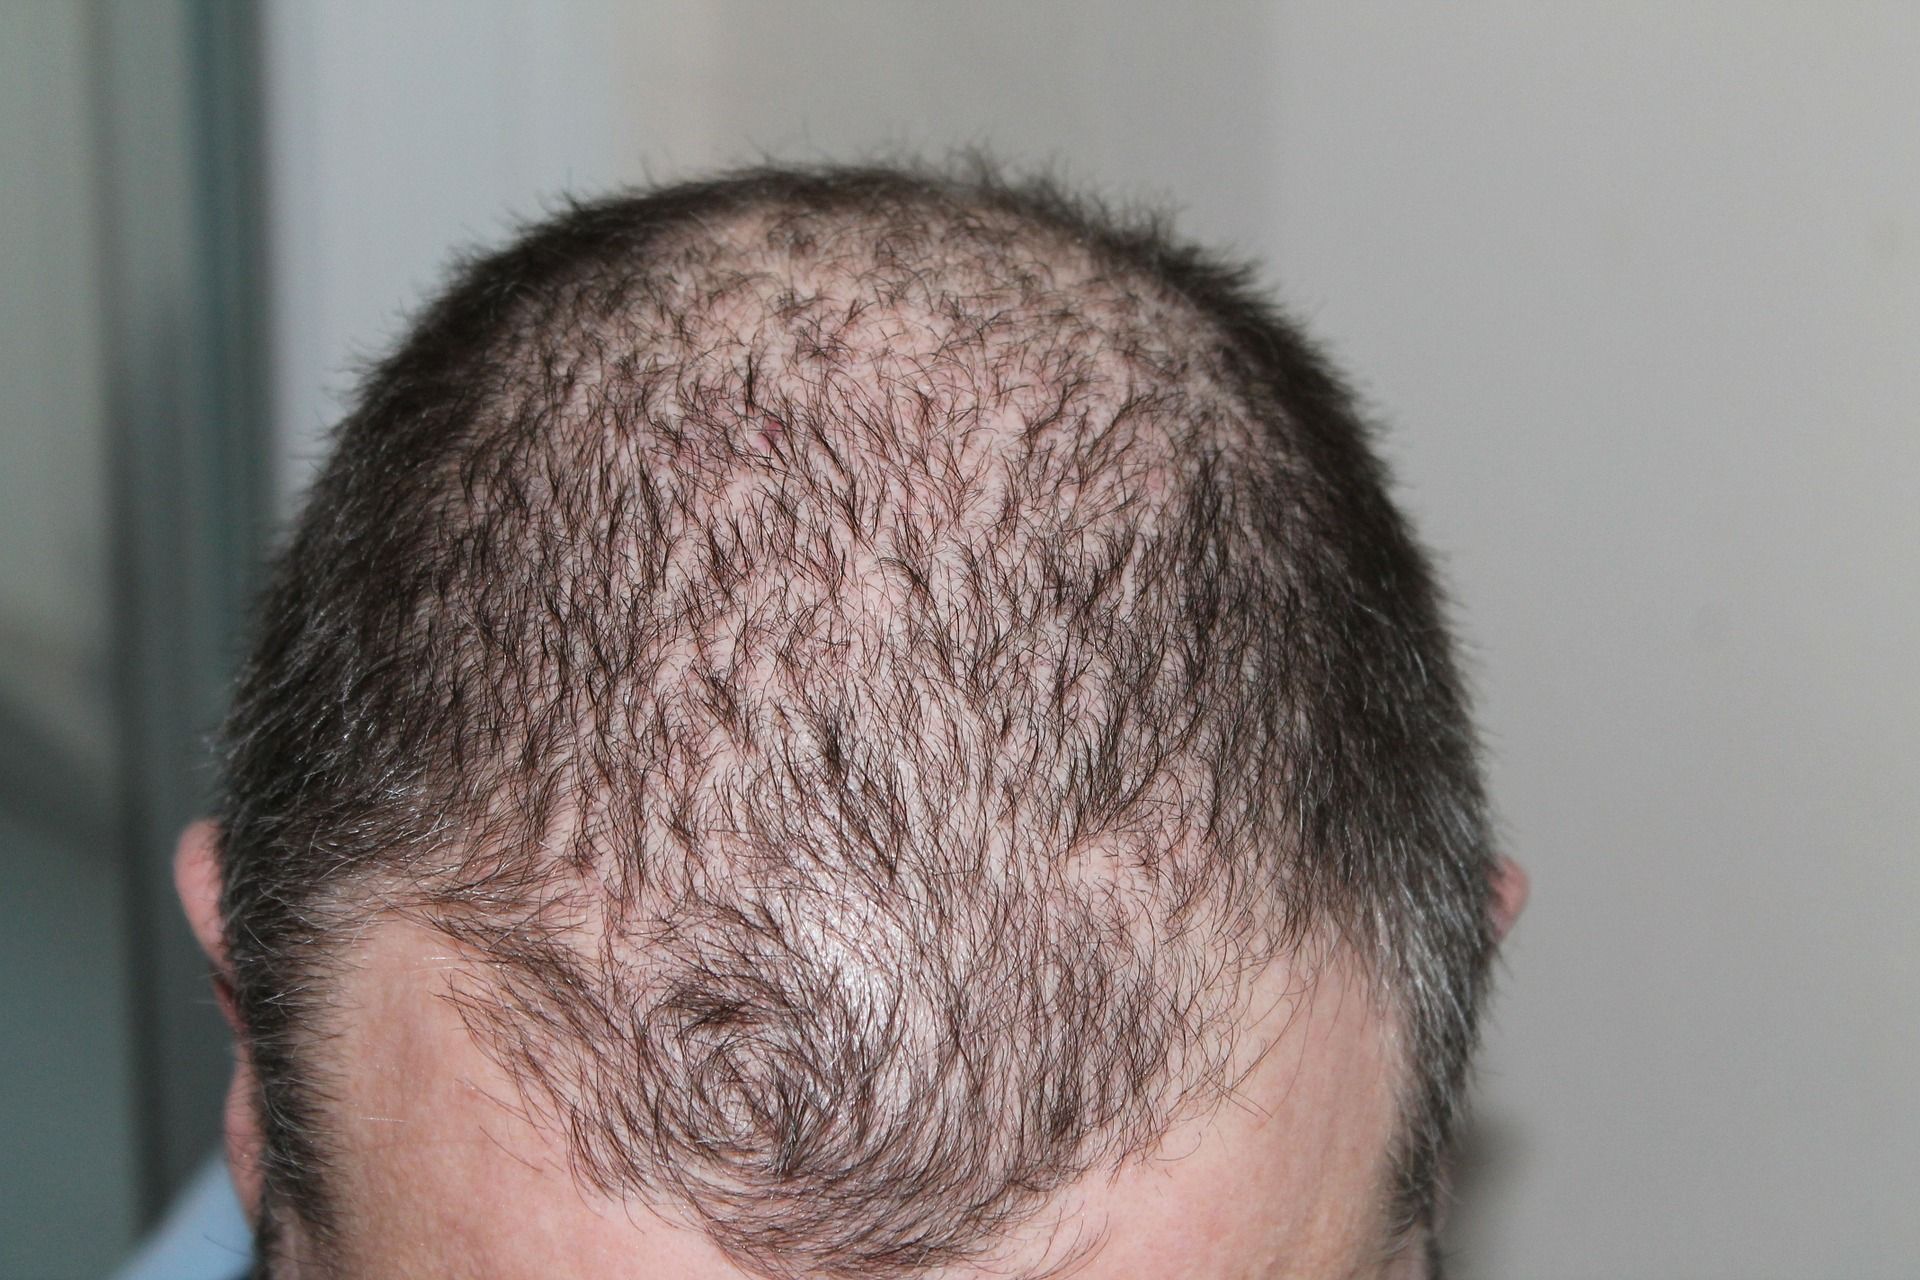 iRestore Laser Hair Growth System Scam